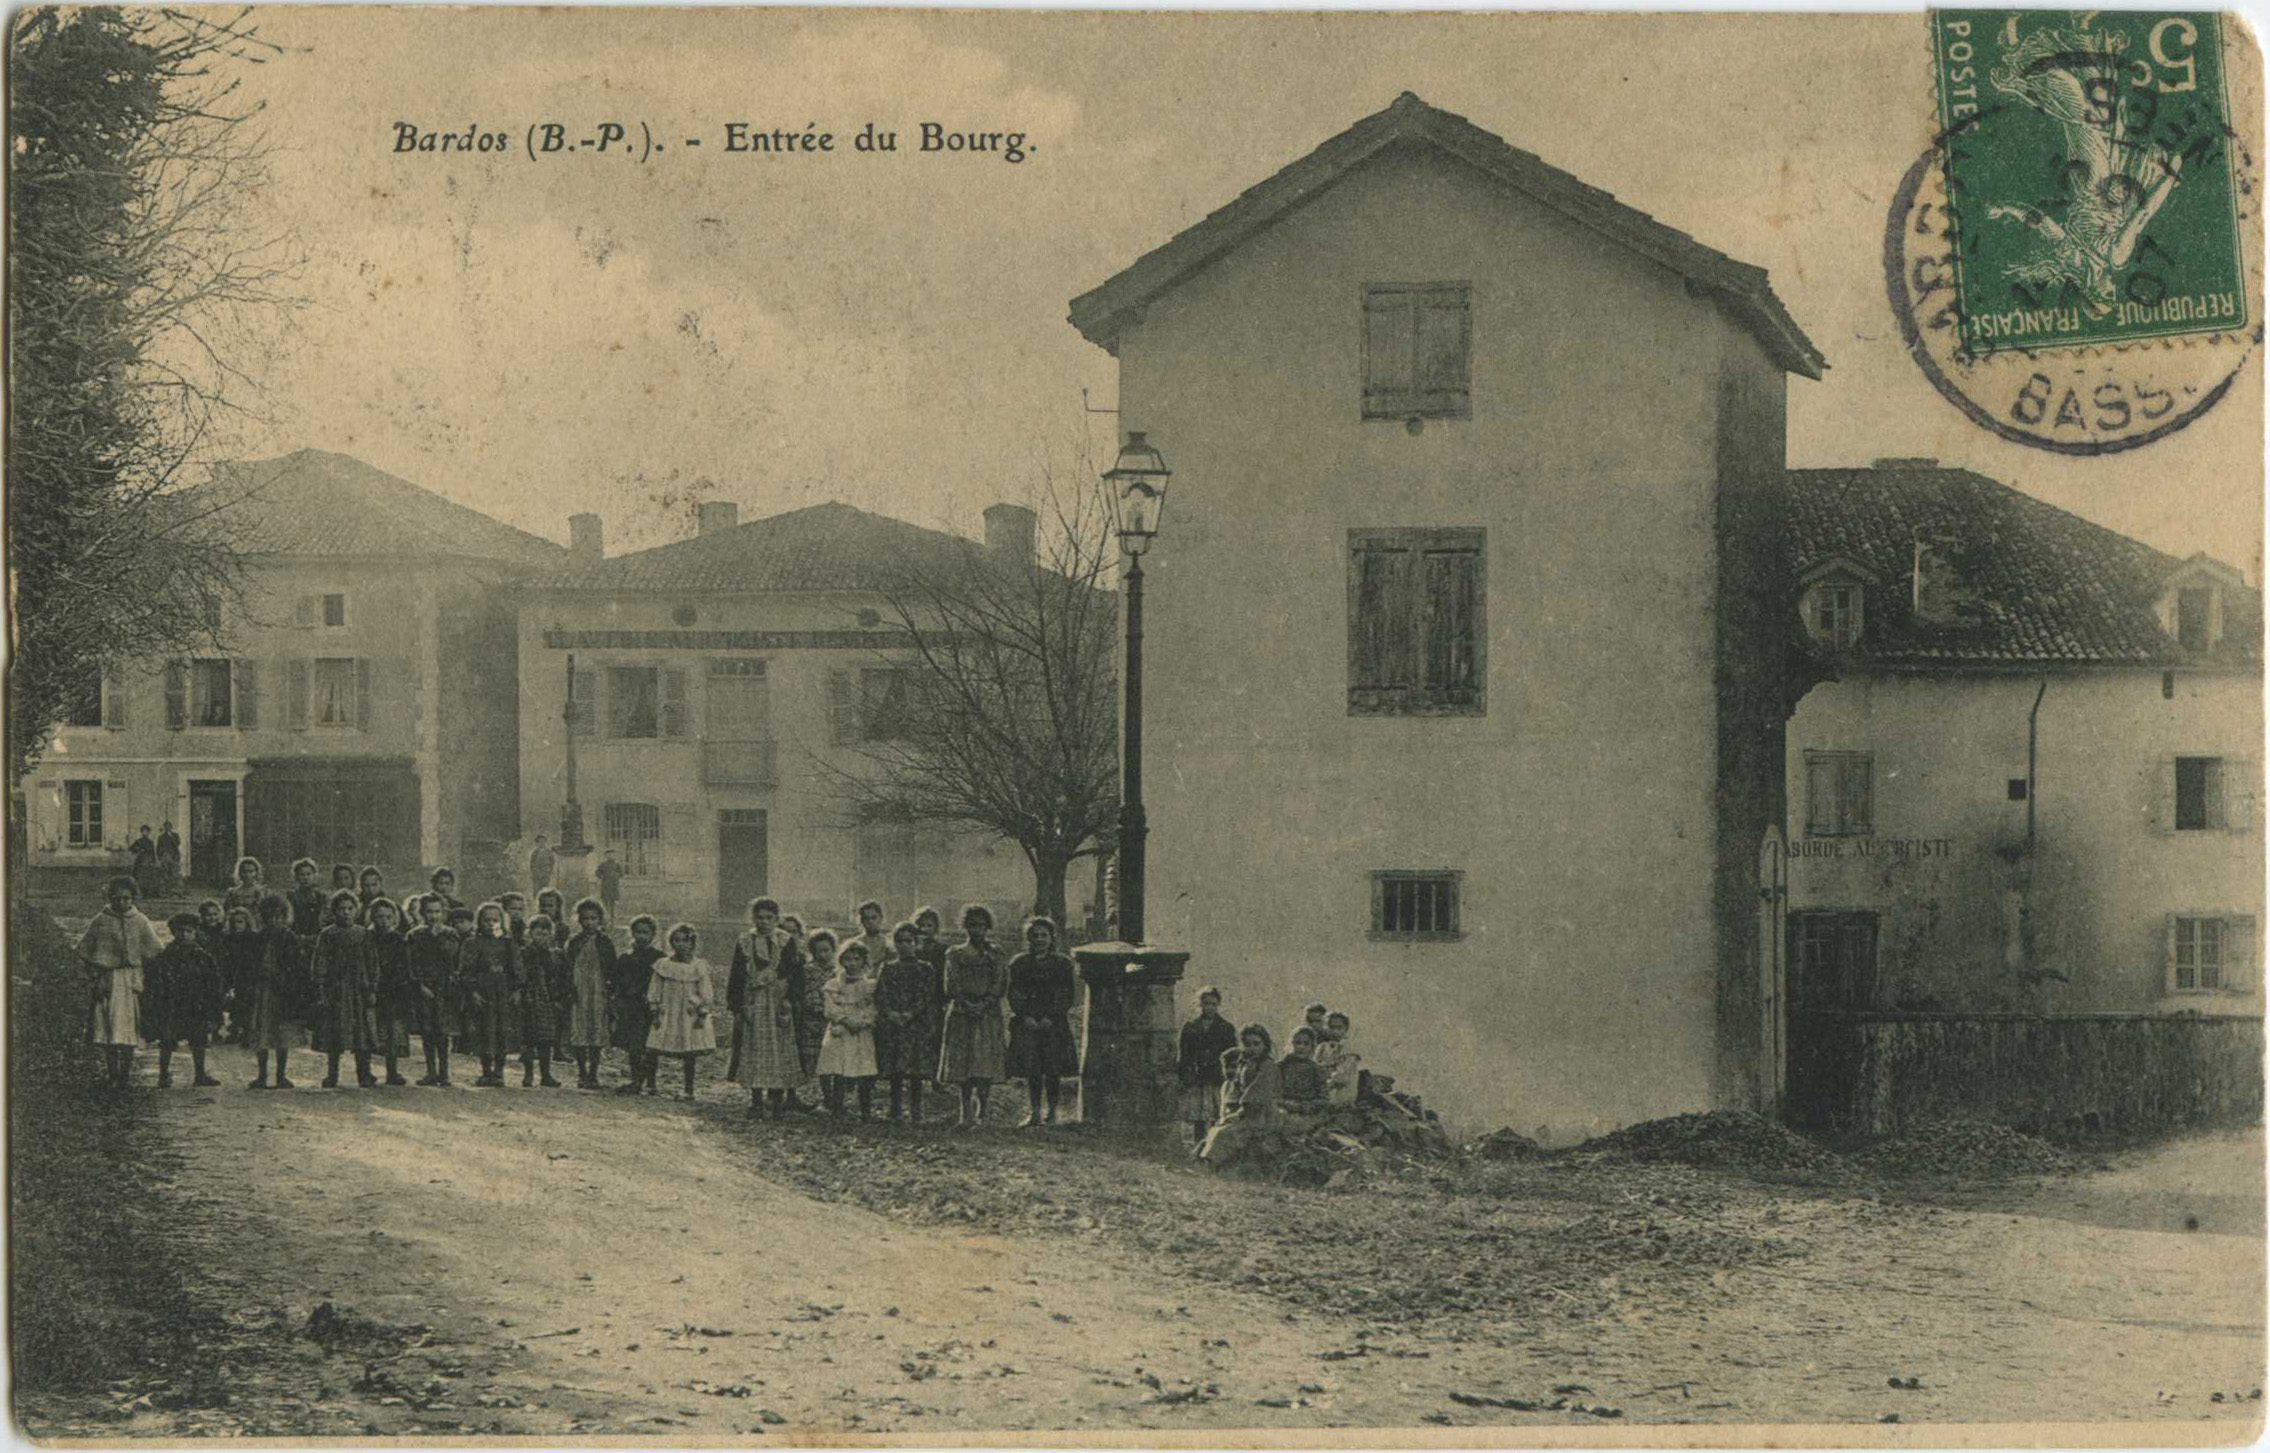 Bardos - Entrée du Bourg